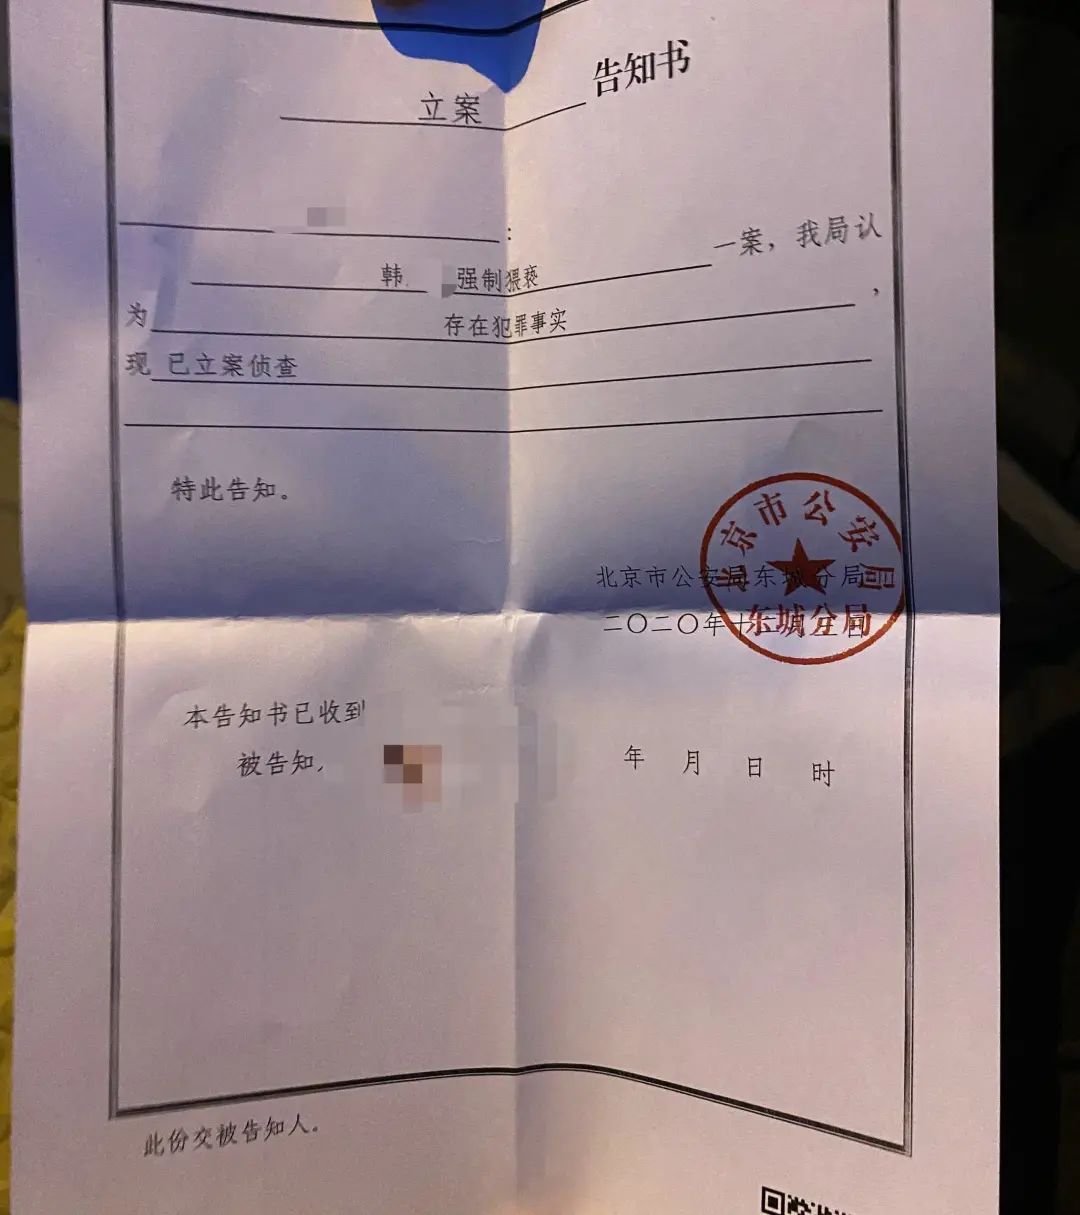 12月14日,李伟在北新桥派出所获得的一份盖有北京市公安局东城分局